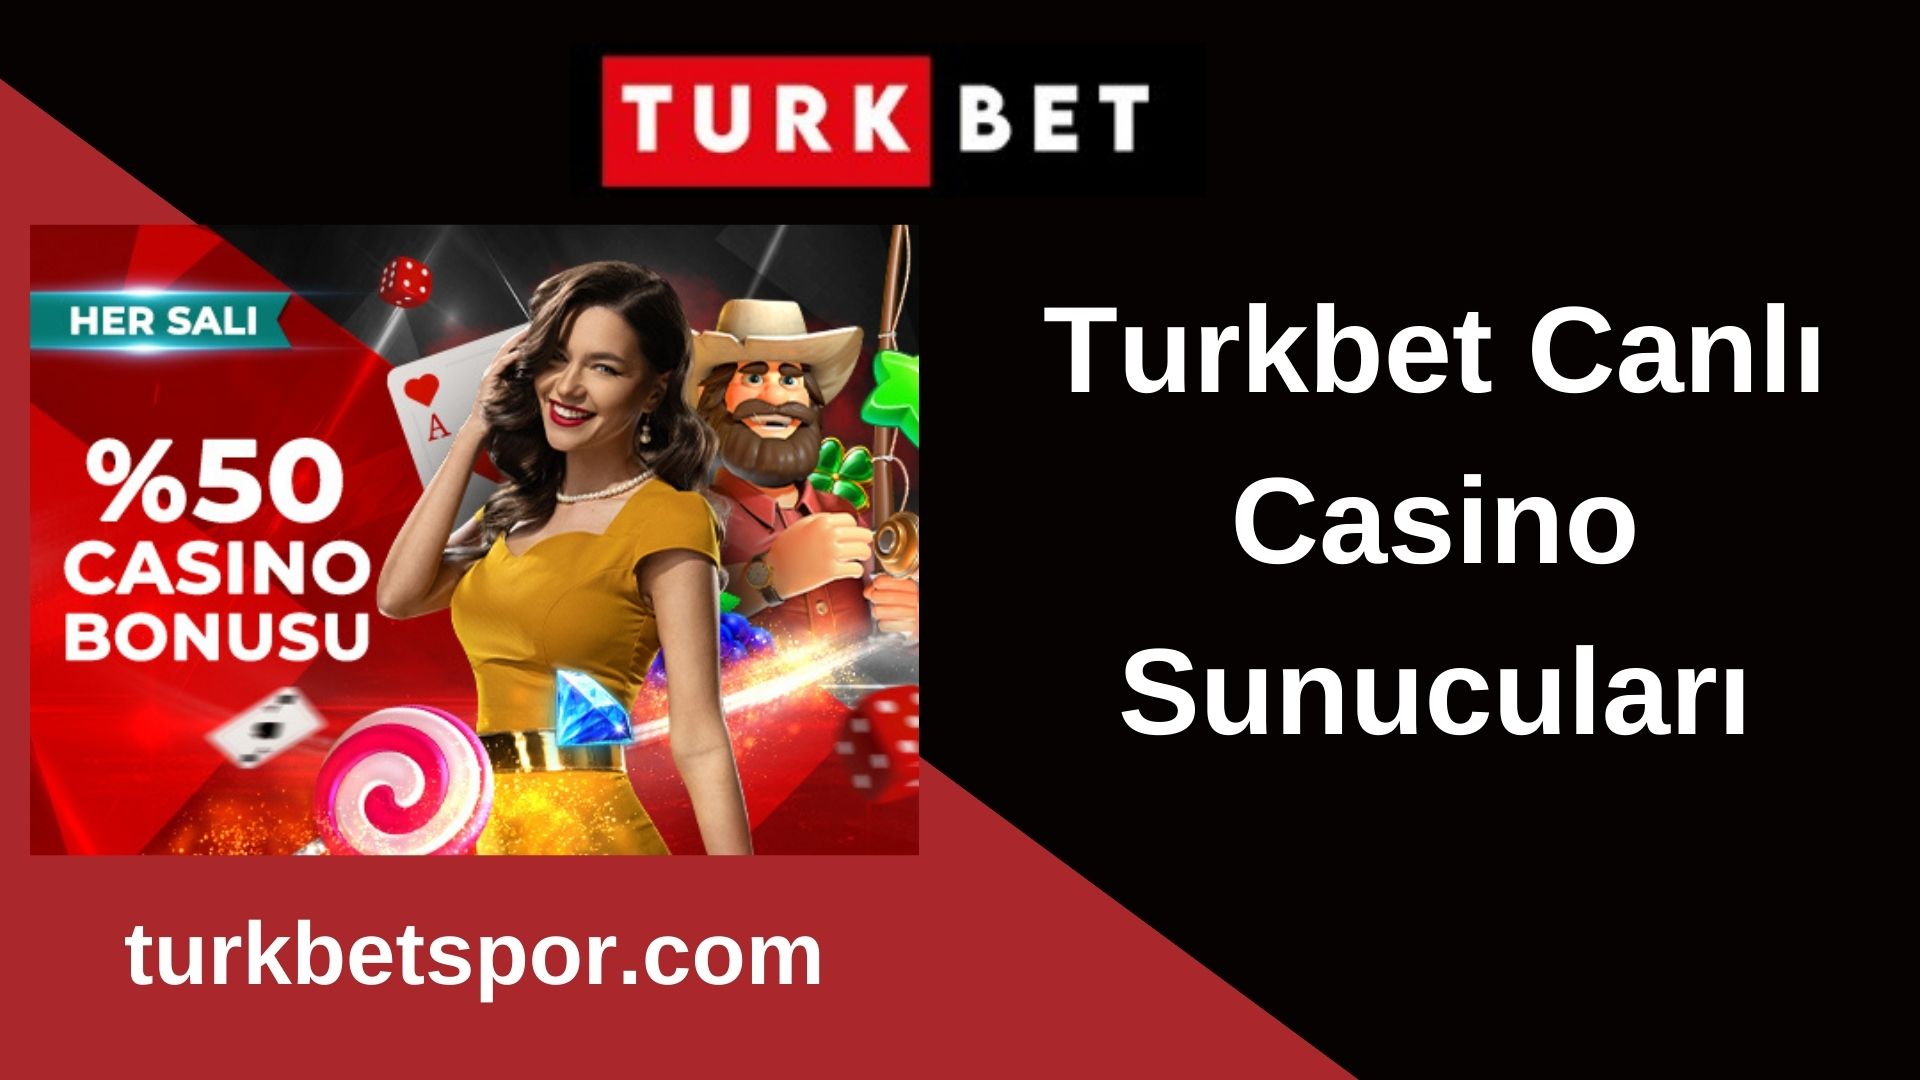 Turkbet Canlı Casino Sunucuları